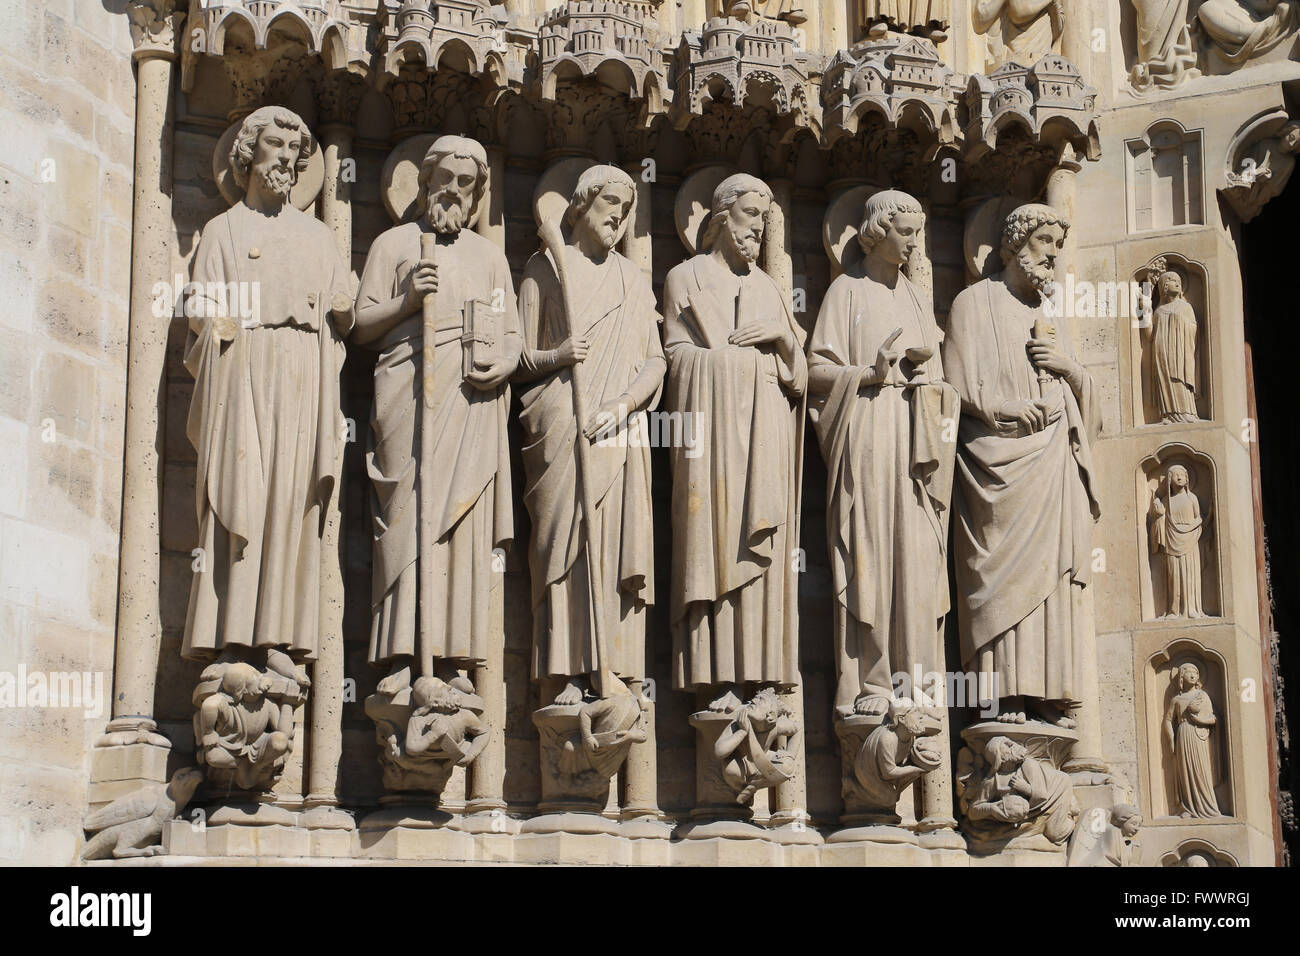 La Francia. Parigi. La facciata occidentale, la cattedrale di Notre-dame.del XIII secolo. Il portale dell'ultima sentenza, apostoli a sinistra. Foto Stock